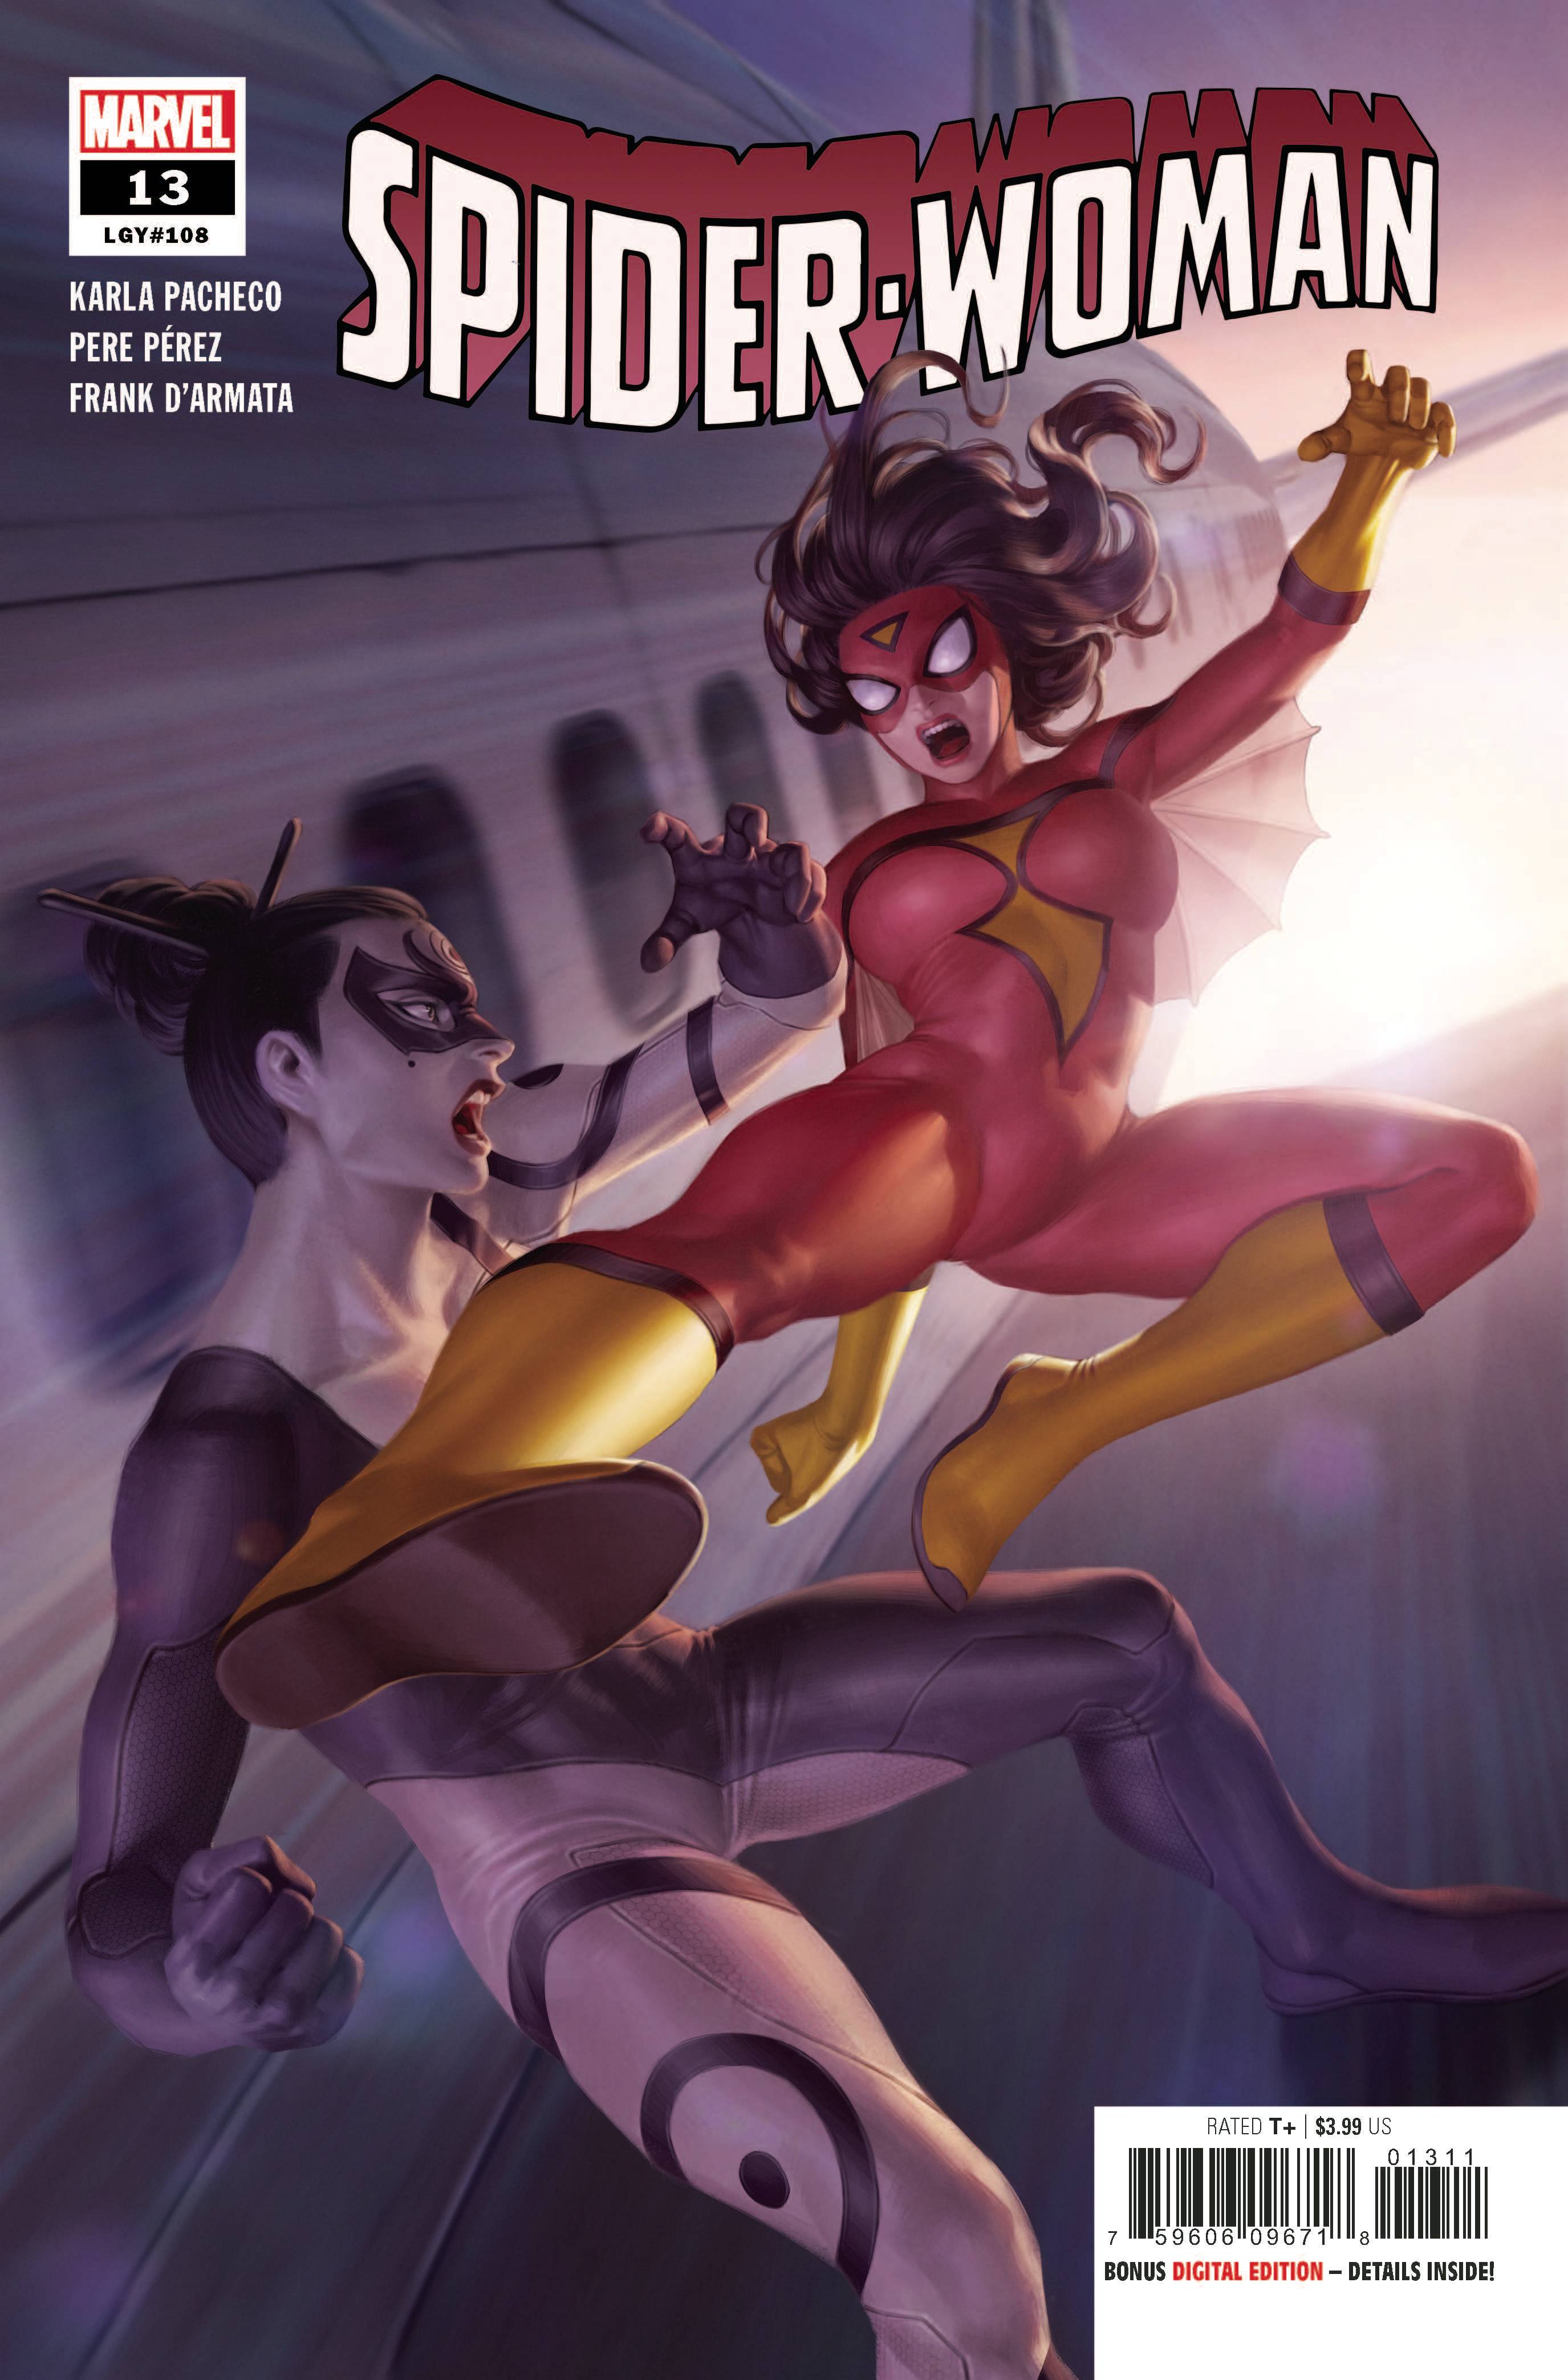 SPIDER-WOMAN #13 | L.A. Mood Comics and Games